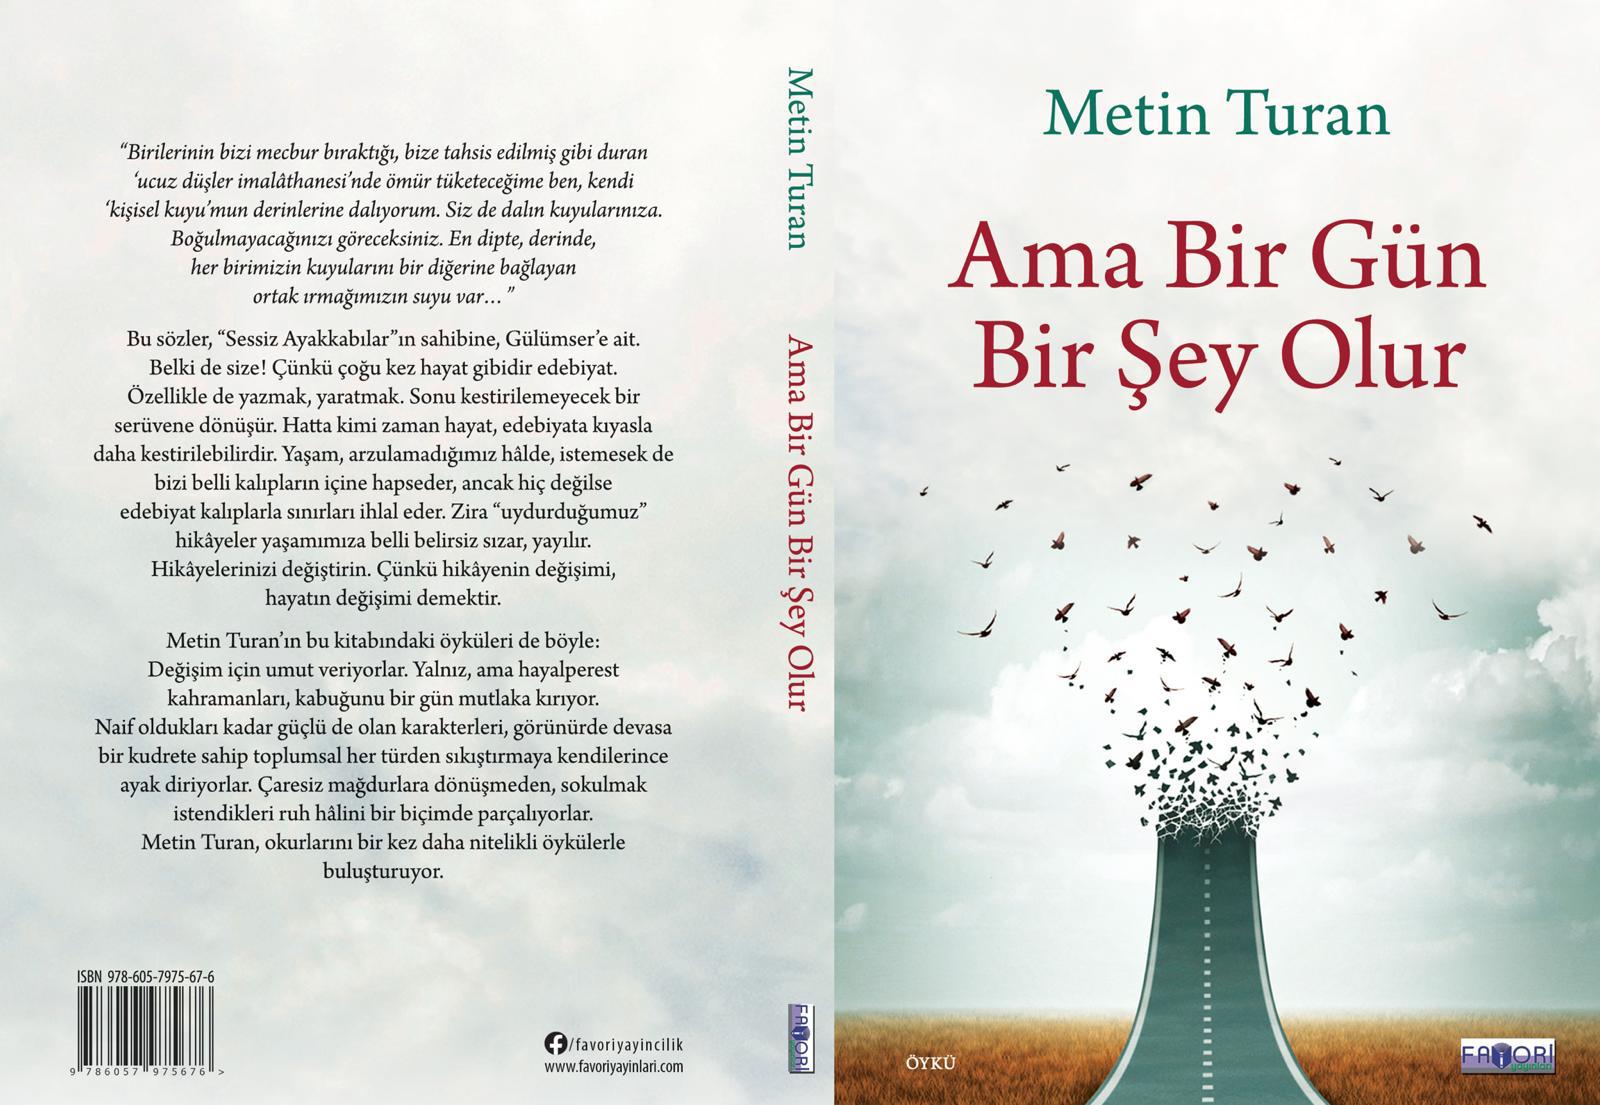 Metin Turan’ın yeni öykü kitabı üzerine: Ama Bir Gün Bir Şey Olur